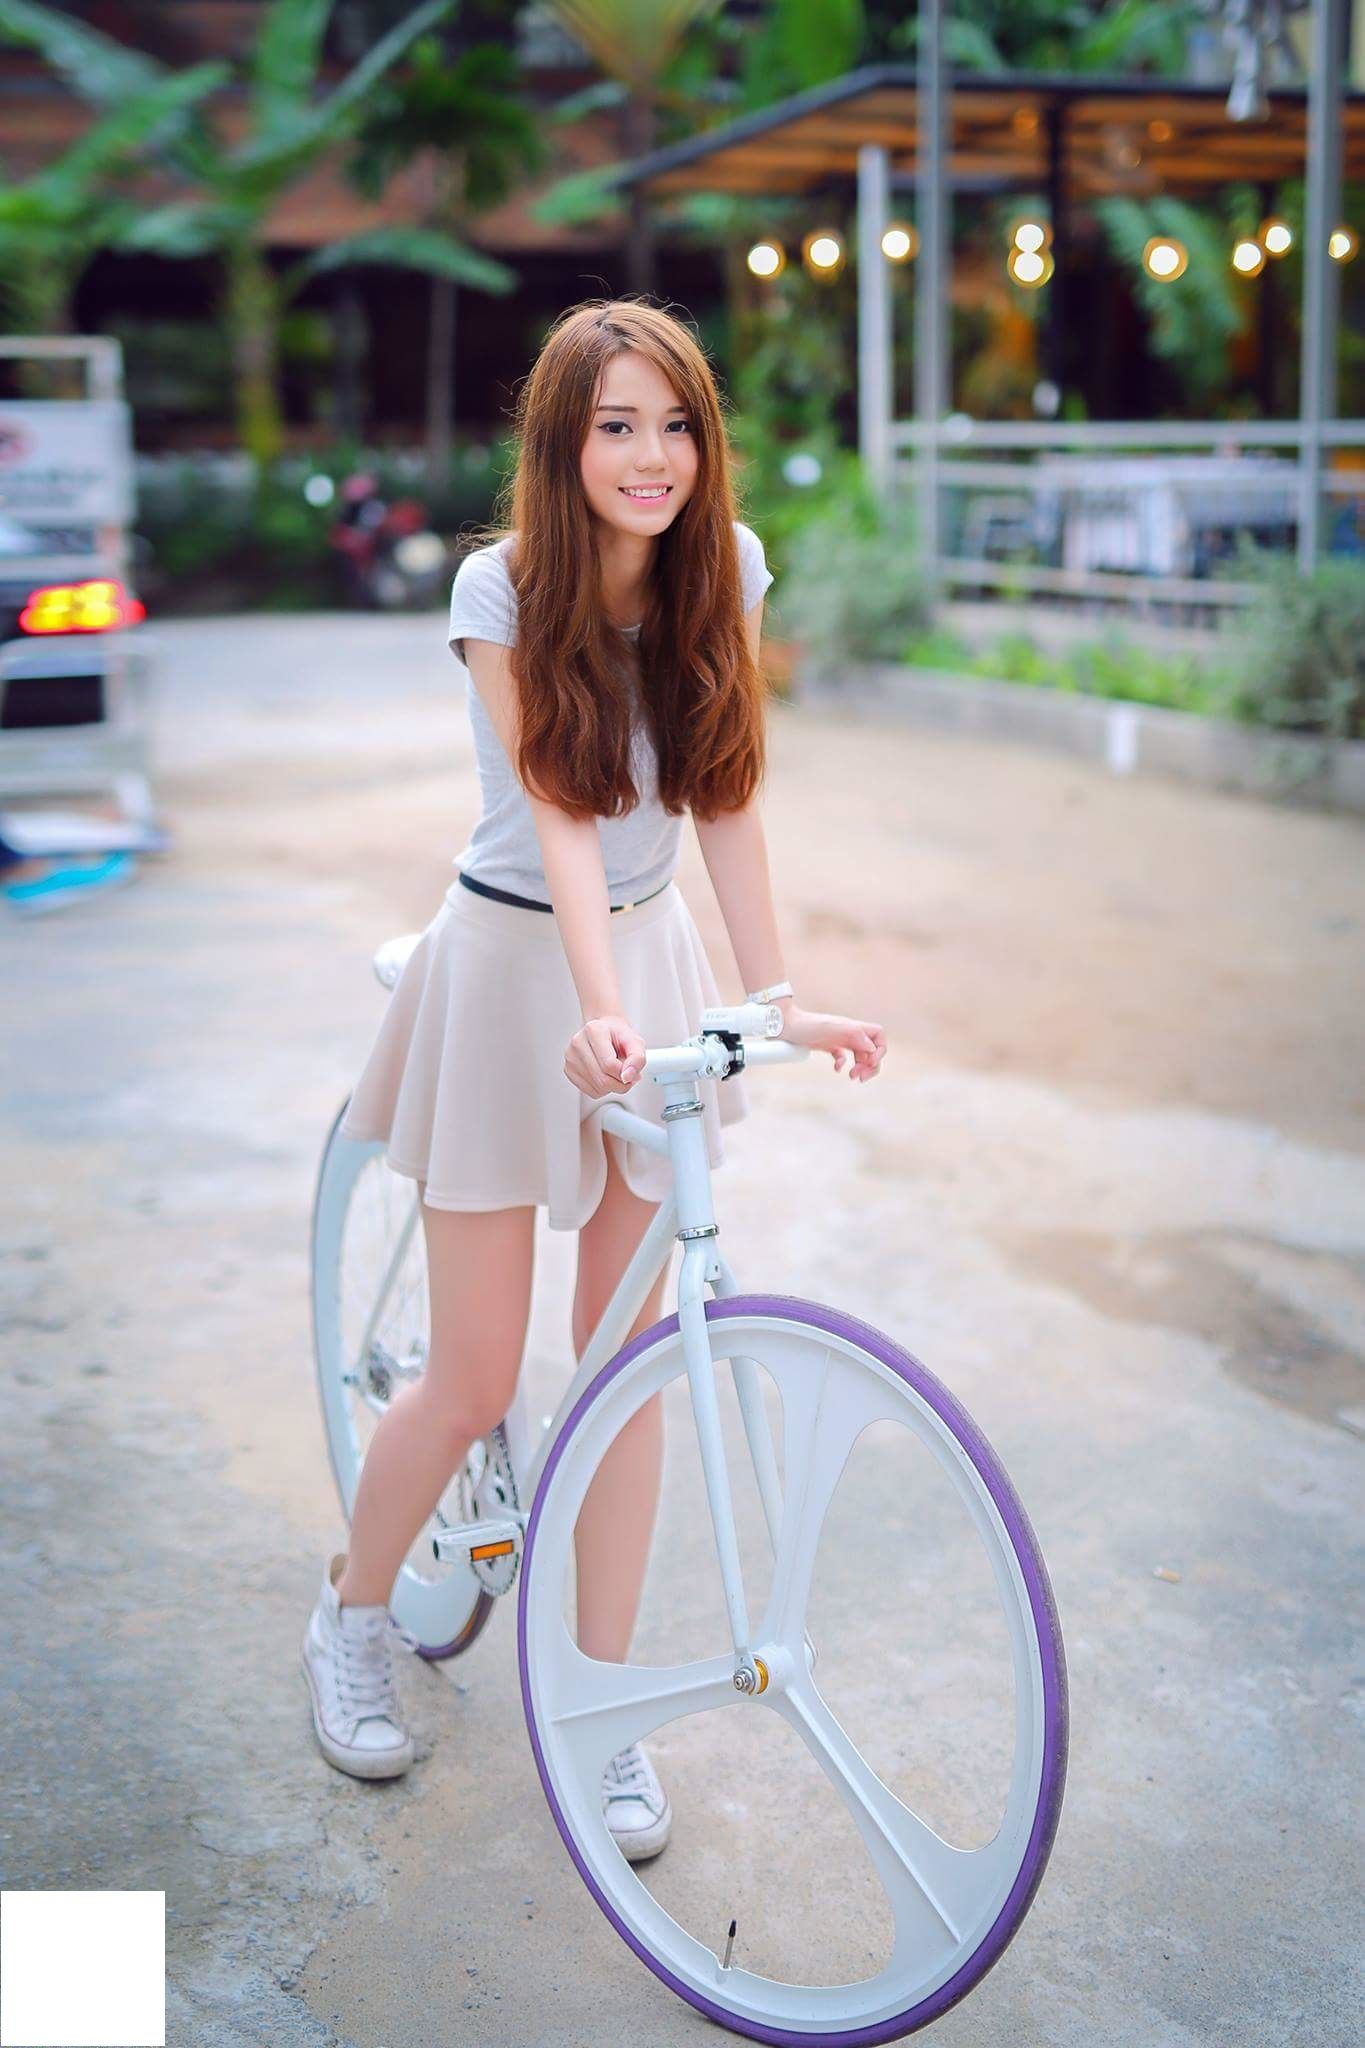 Bike girl1.jpg